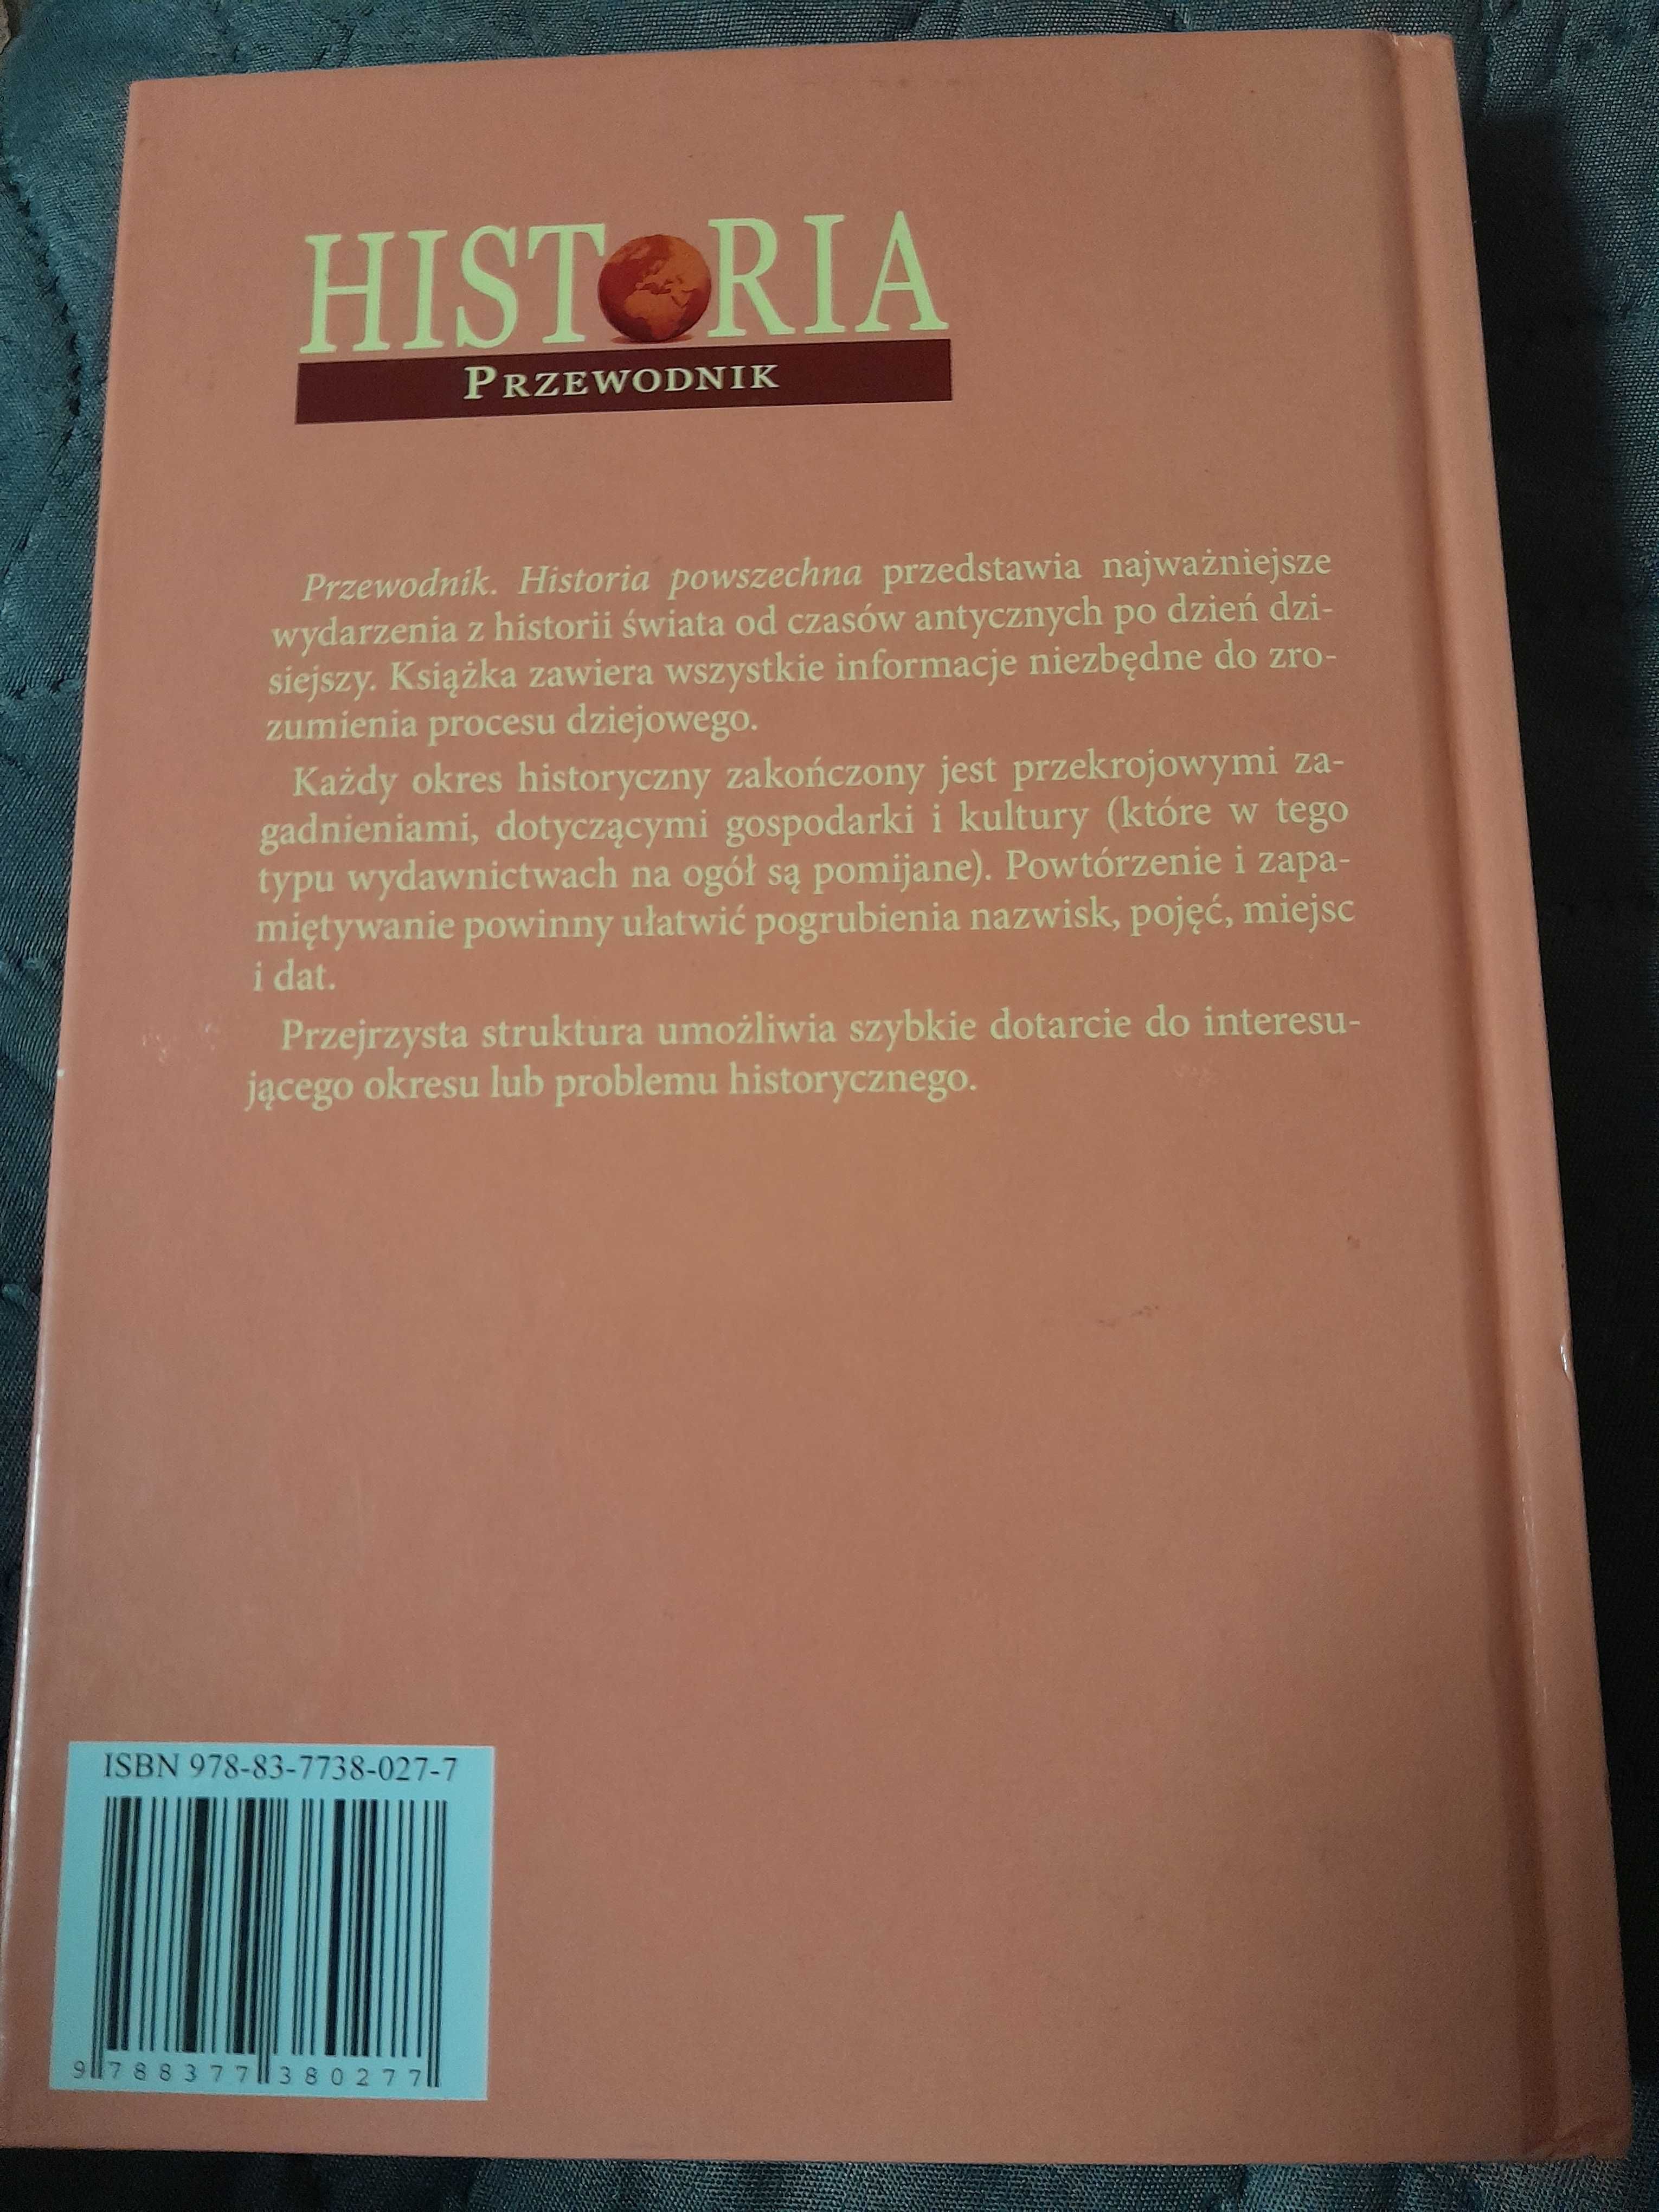 Historia powszechna - Przewodnik - Wydawnictwo IBIS